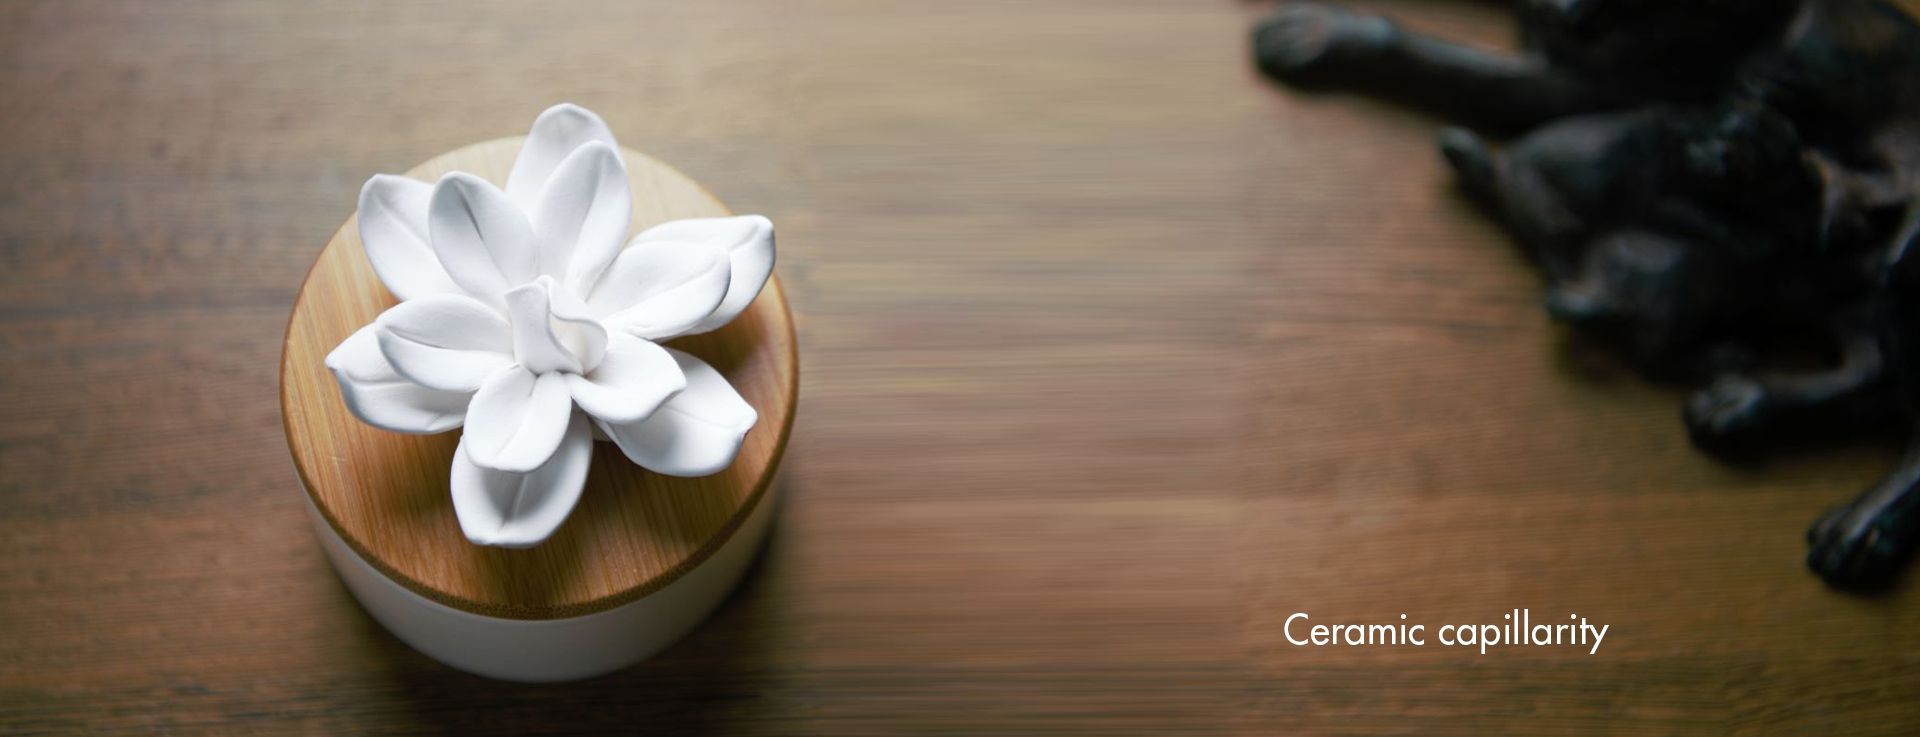 Lotus Ceramic&Wood Ceramic Capillarity